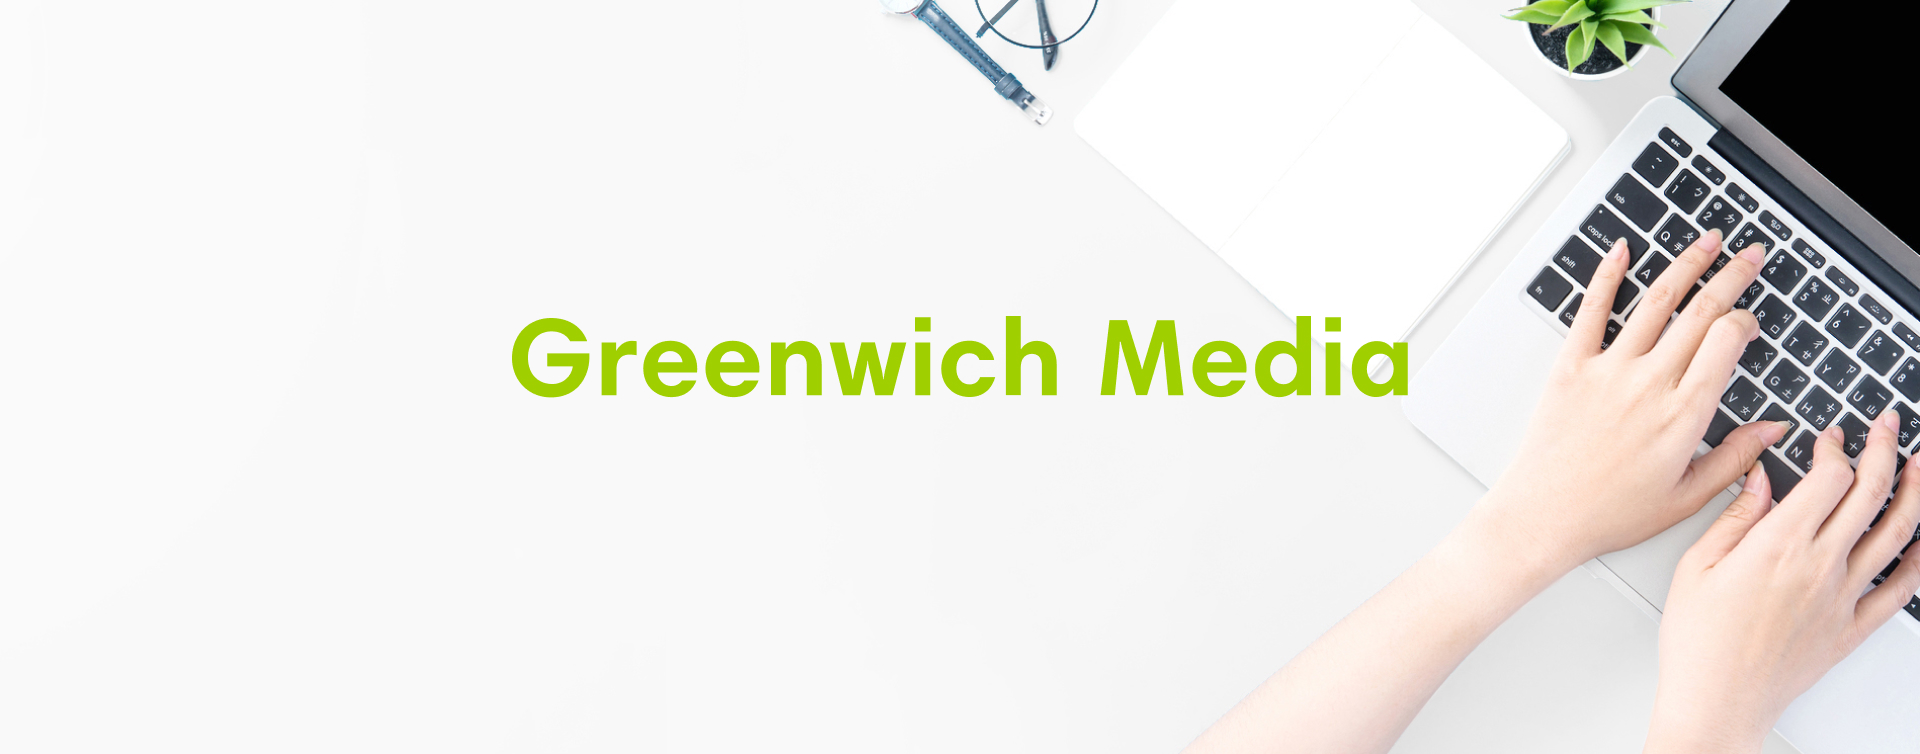 Greenwich Media